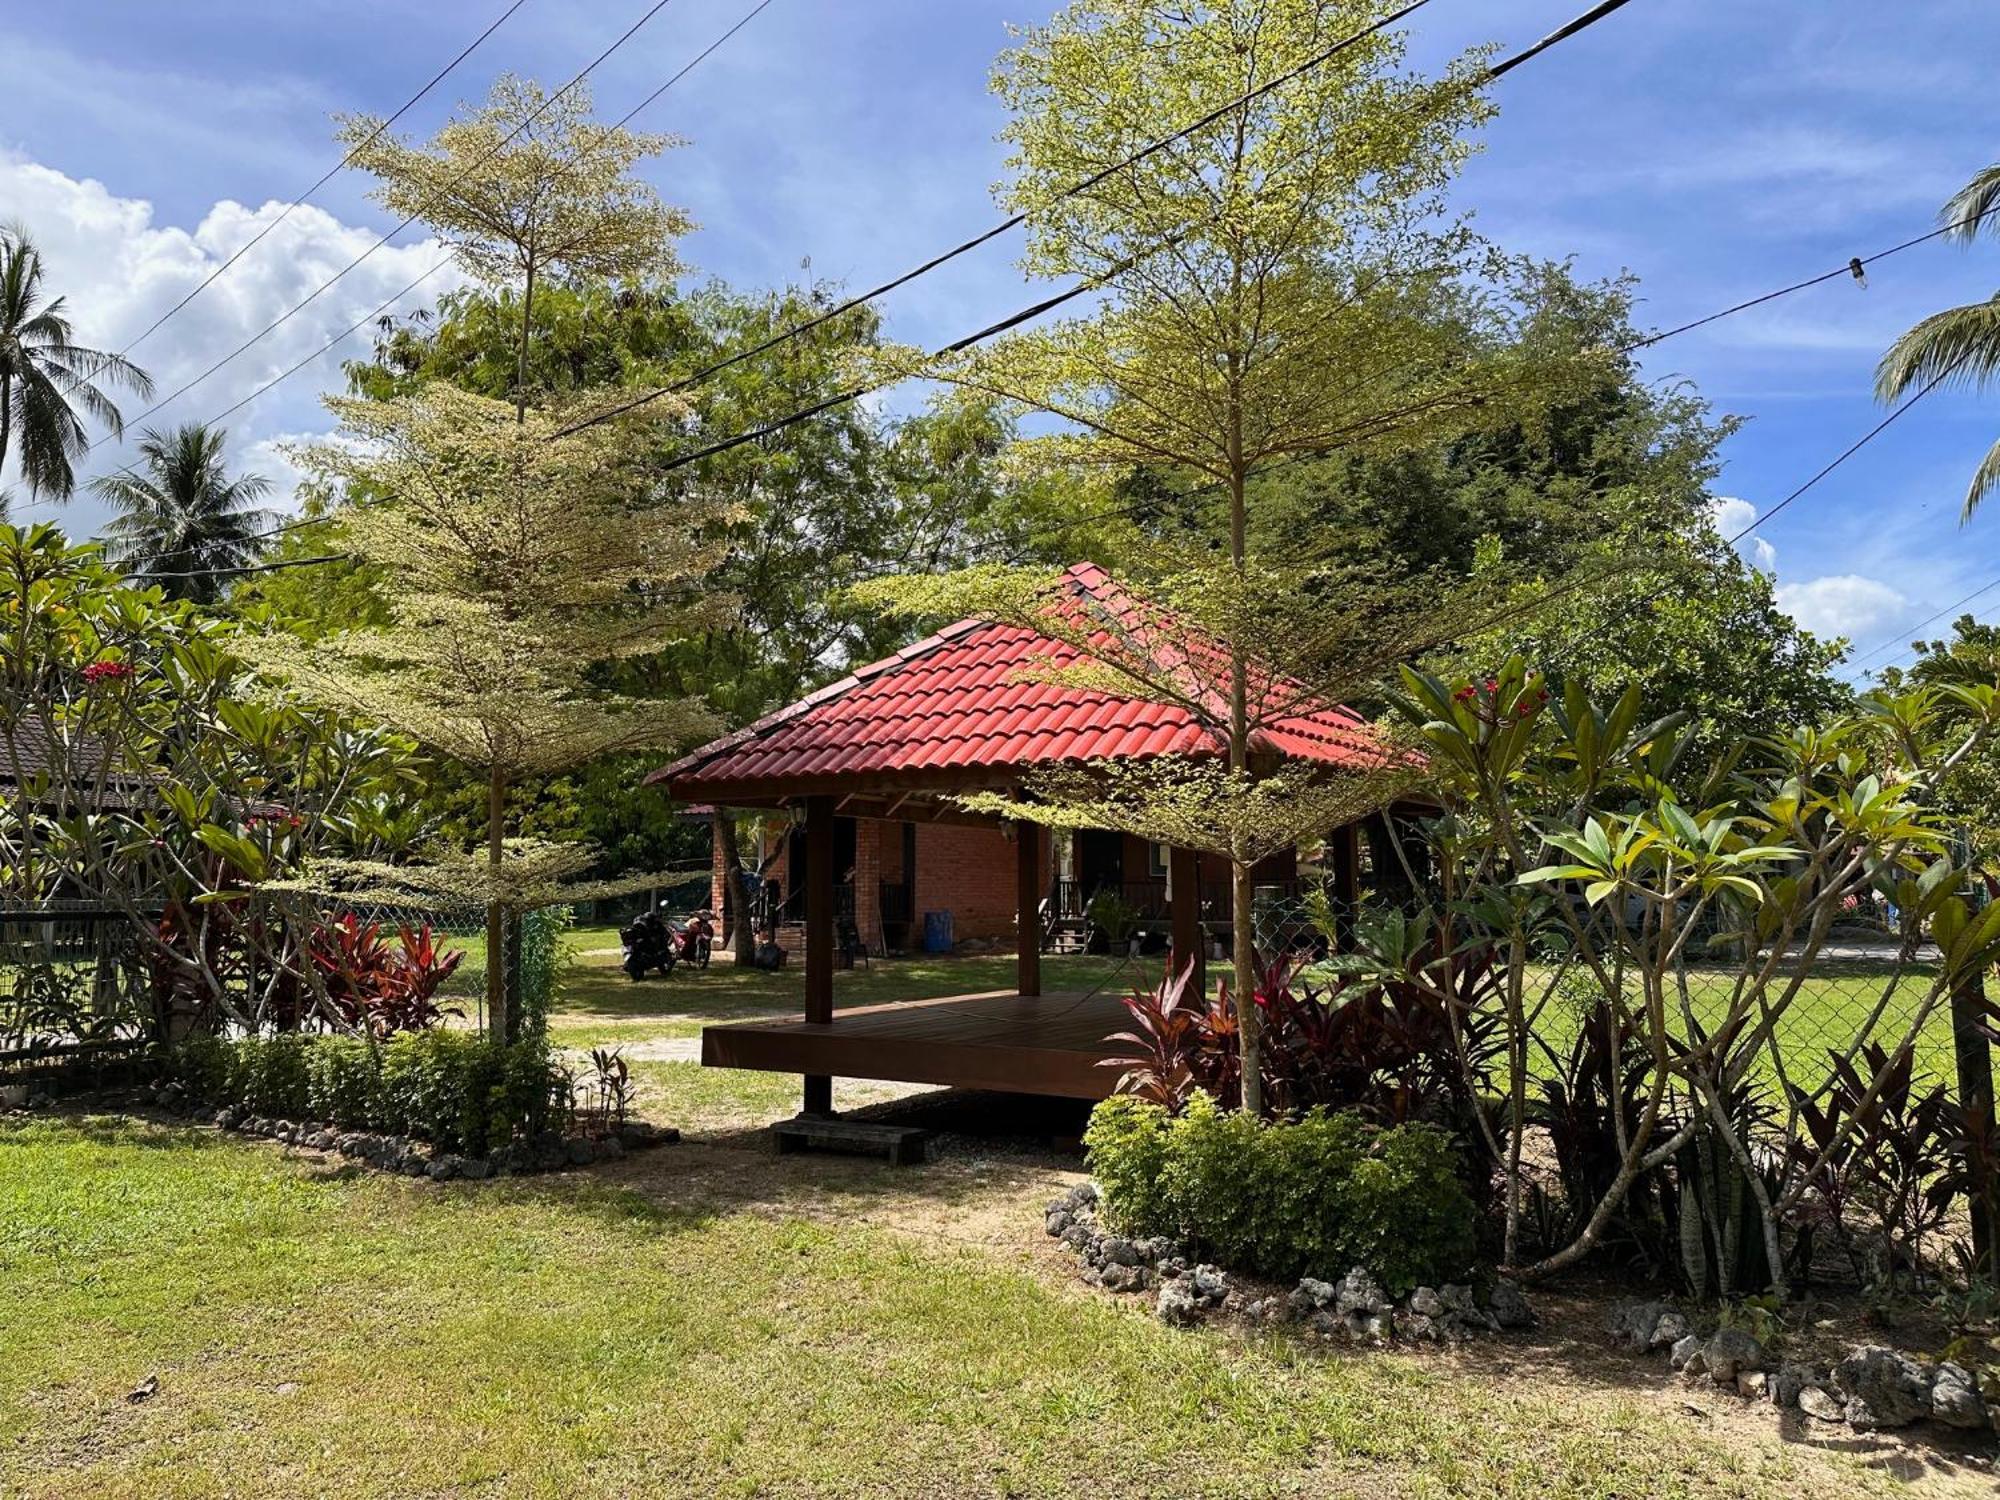 Red Coral Cottage Langkawi Exterior foto